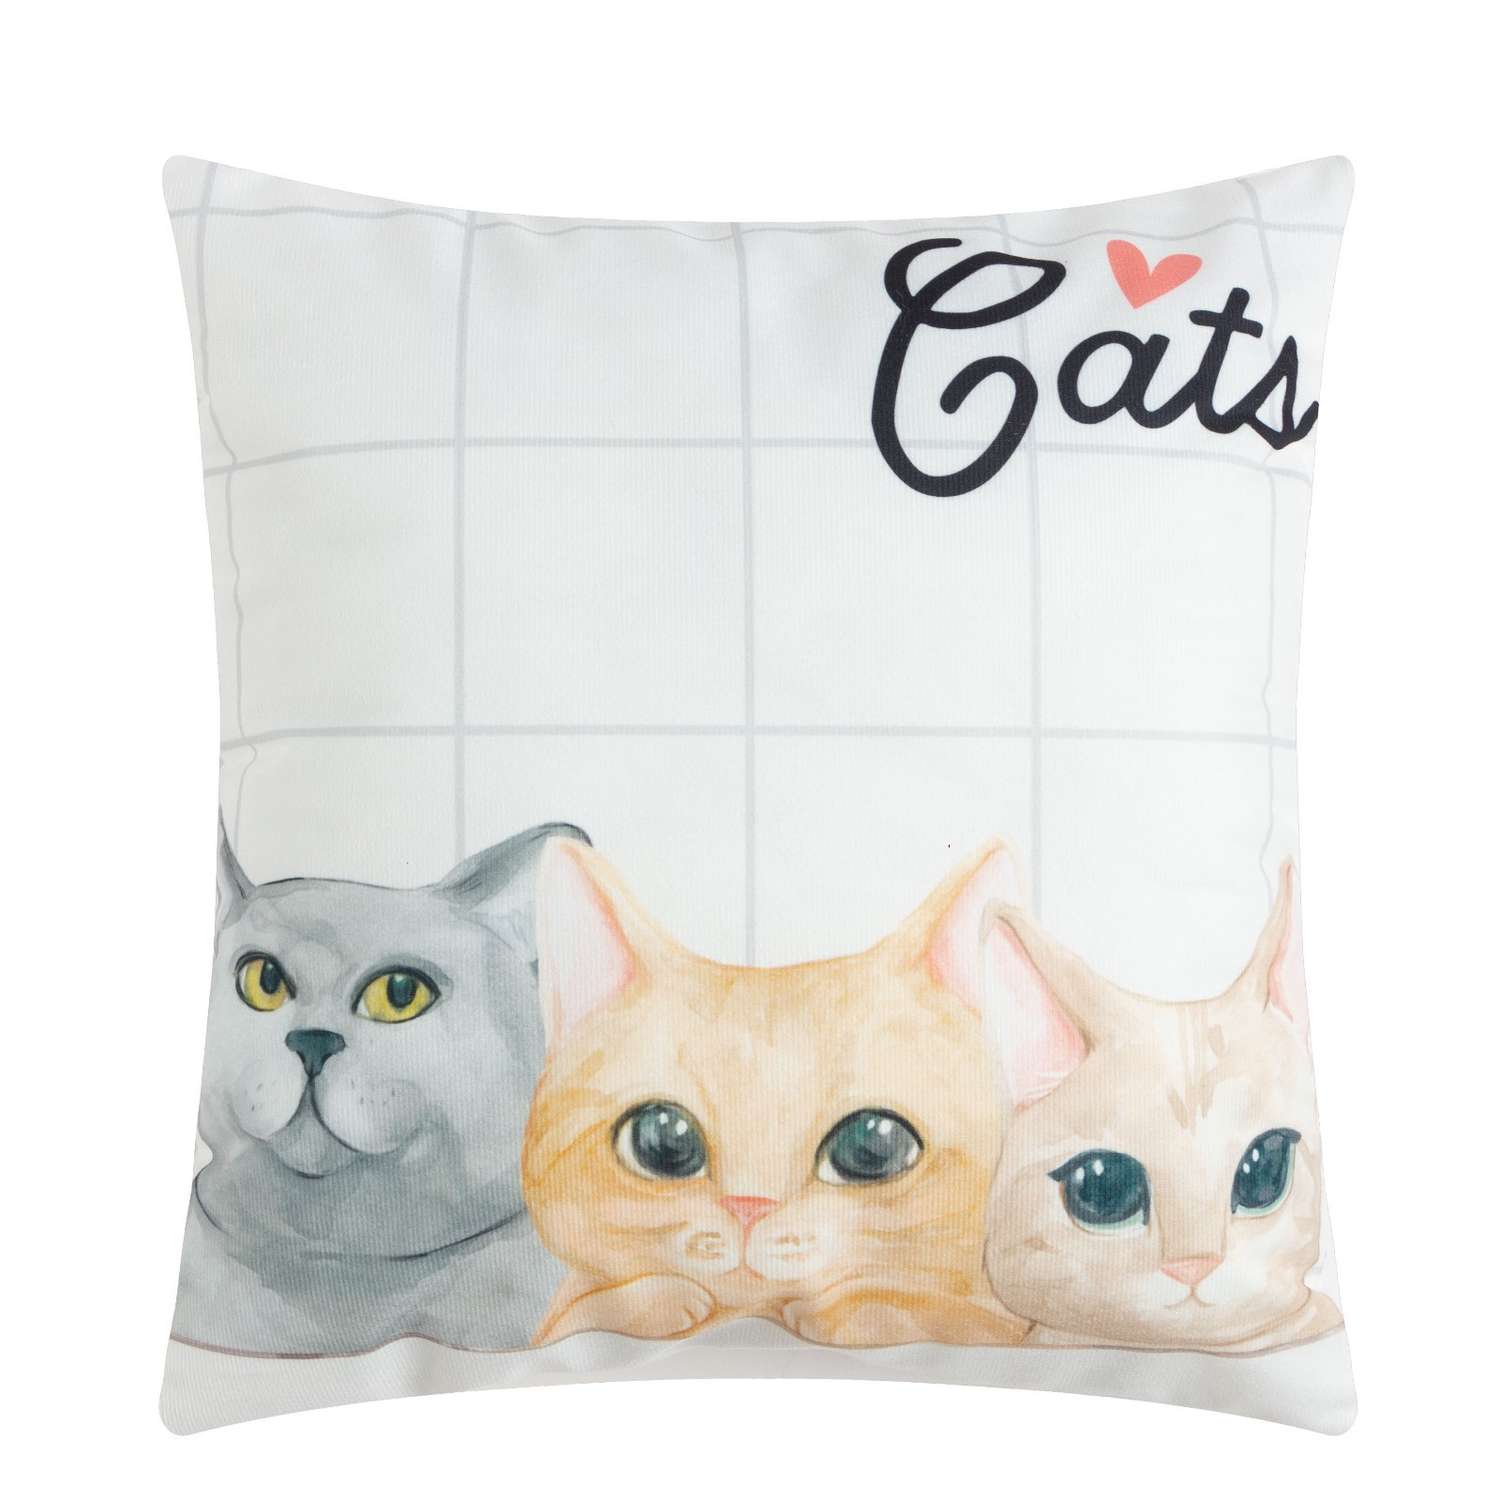 Характер кошки по подушечкам. Подушечки для кошек. Подушка кошка. Подушечки кошки на белом фоне. Подушечки съедобные для кошек.